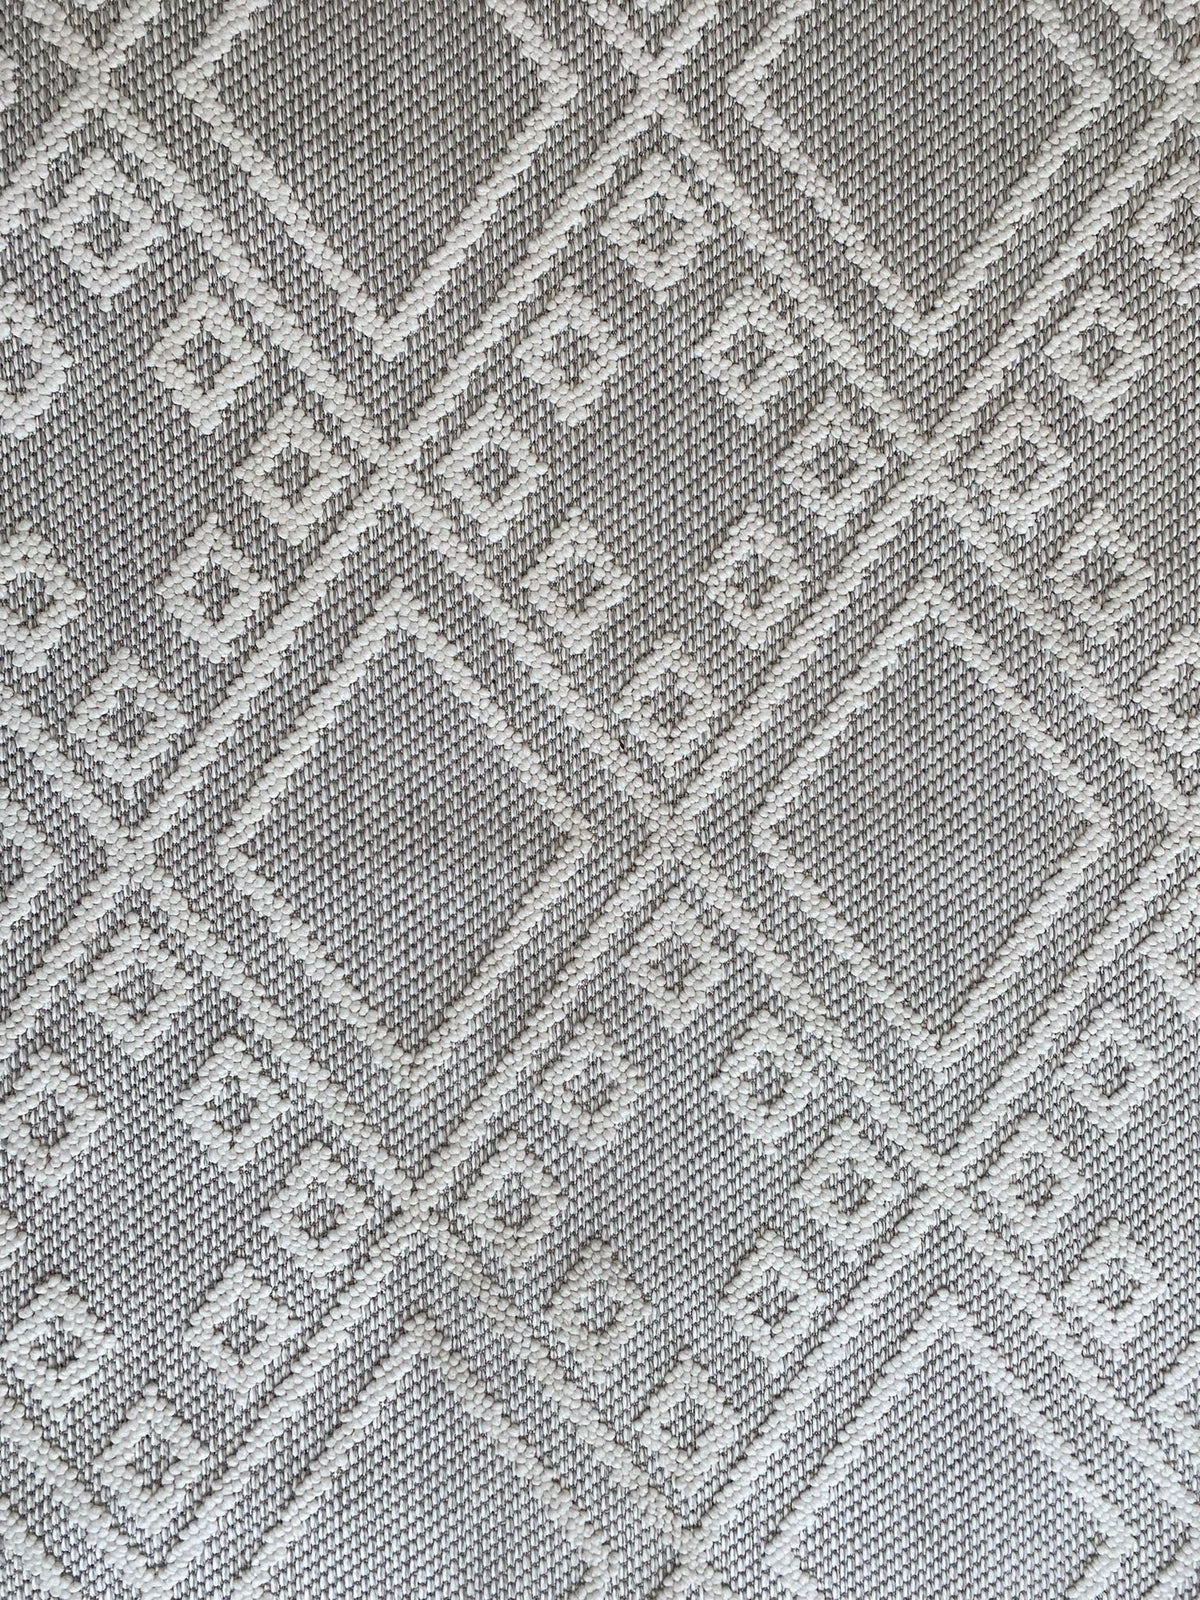 שטיח מעוינים אפור בהיר עם לבן   8